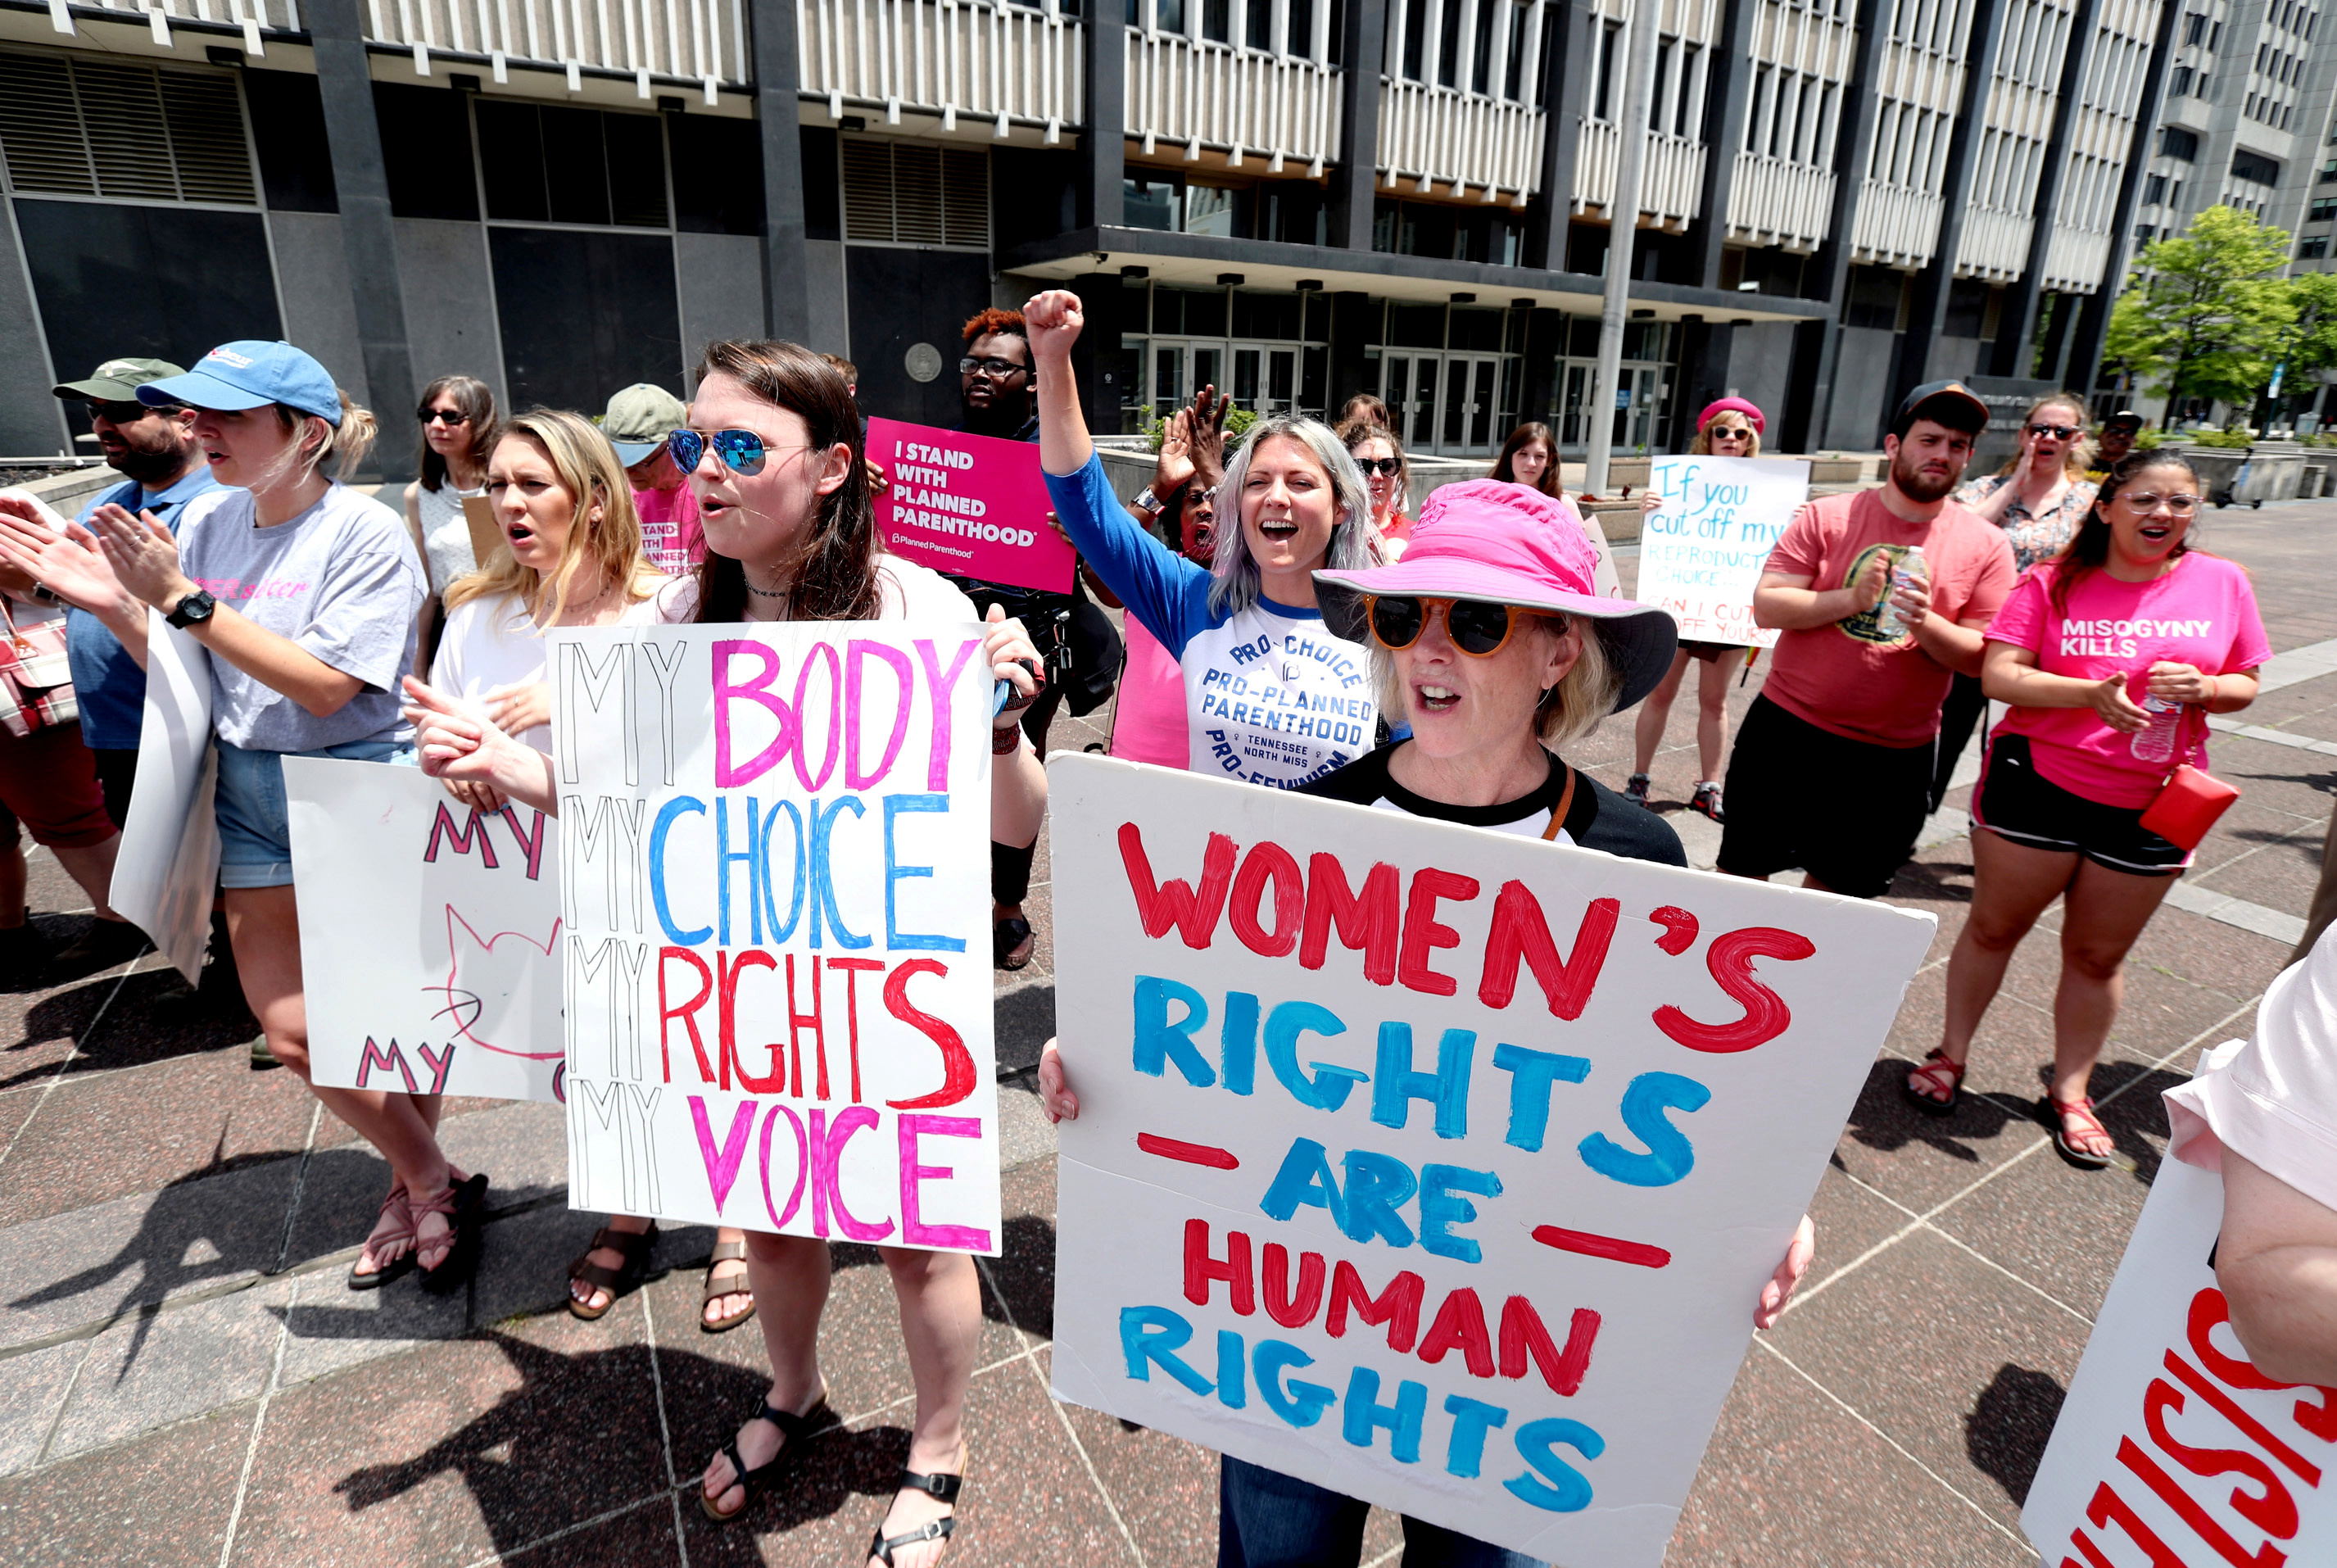 "Права женщин — это права людей"